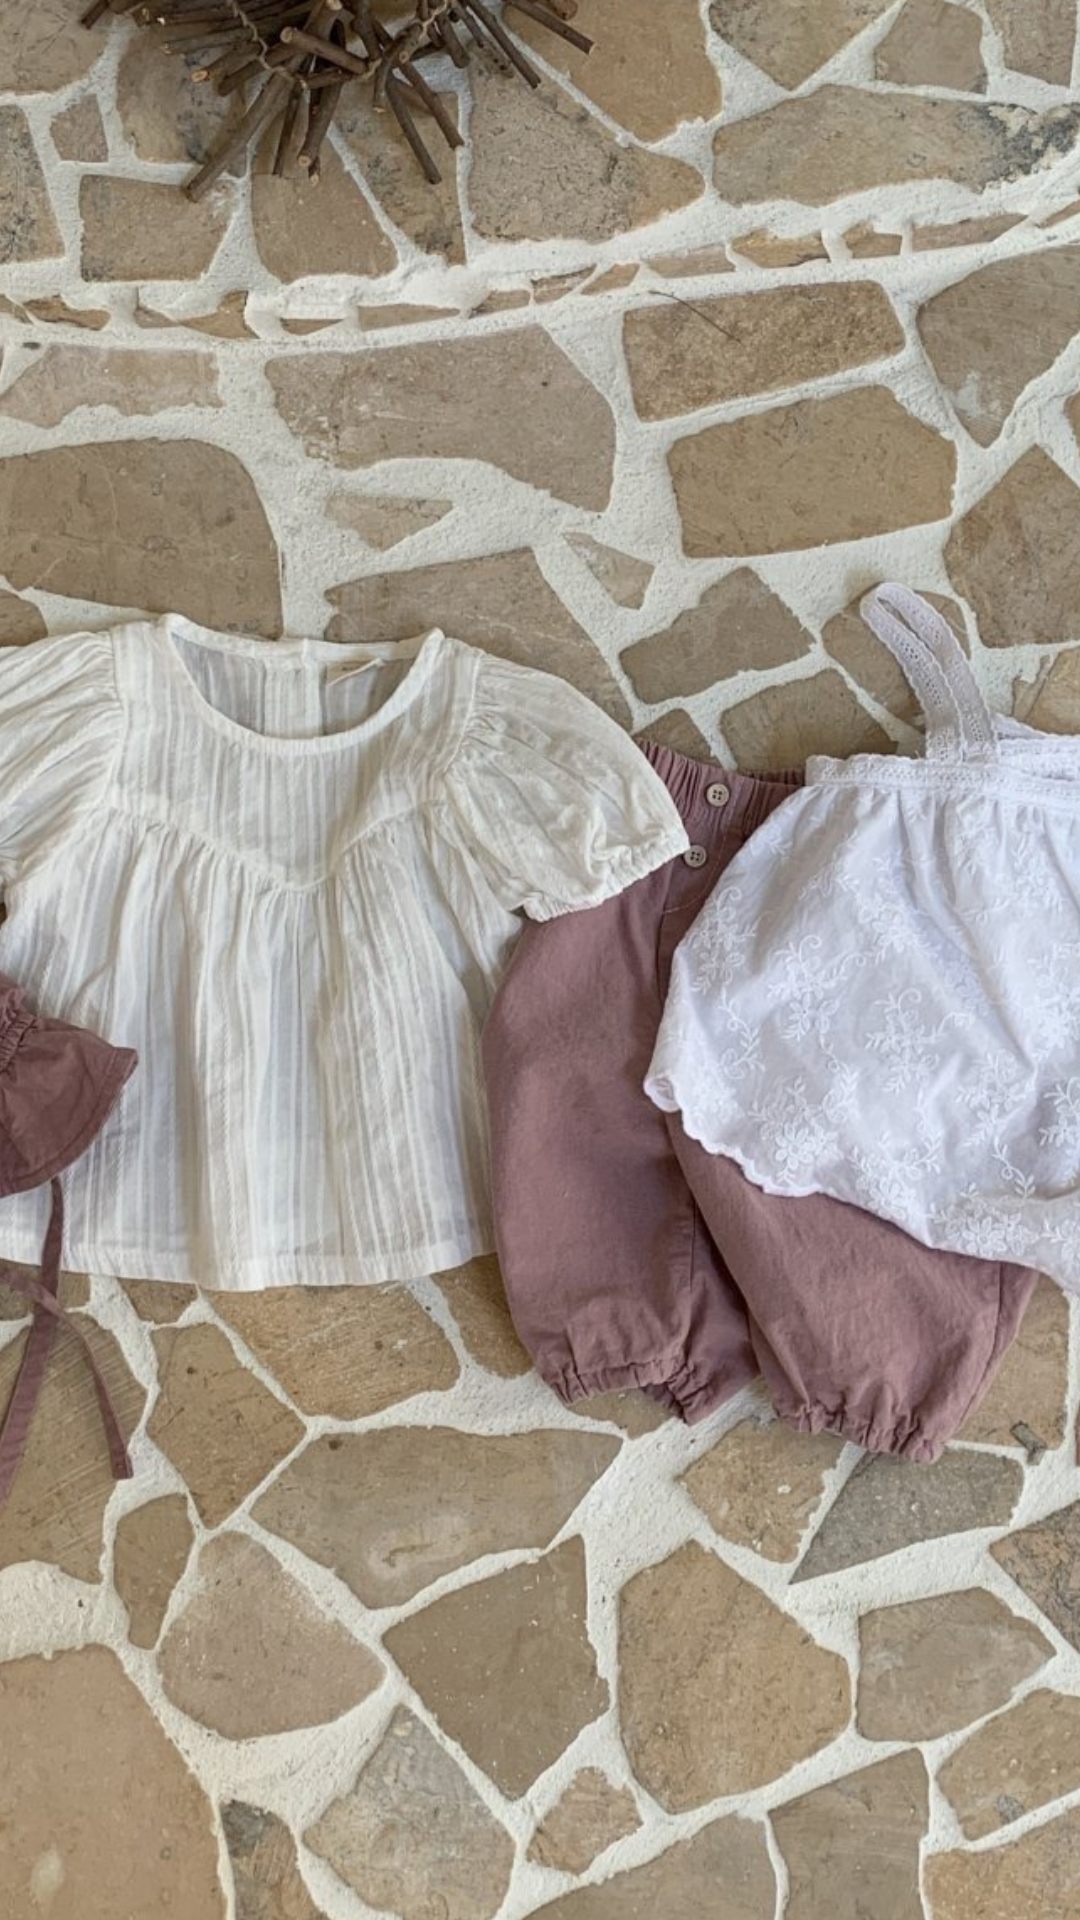 Babys Bebe Holic Raoul-Bluse auf rustikalem Steinboden, bestehend aus einem weißen Rüschenoberteil mit luftiger Ärmelgestaltung und einem staubrosafarbenen Overall mit Spitzendetails.